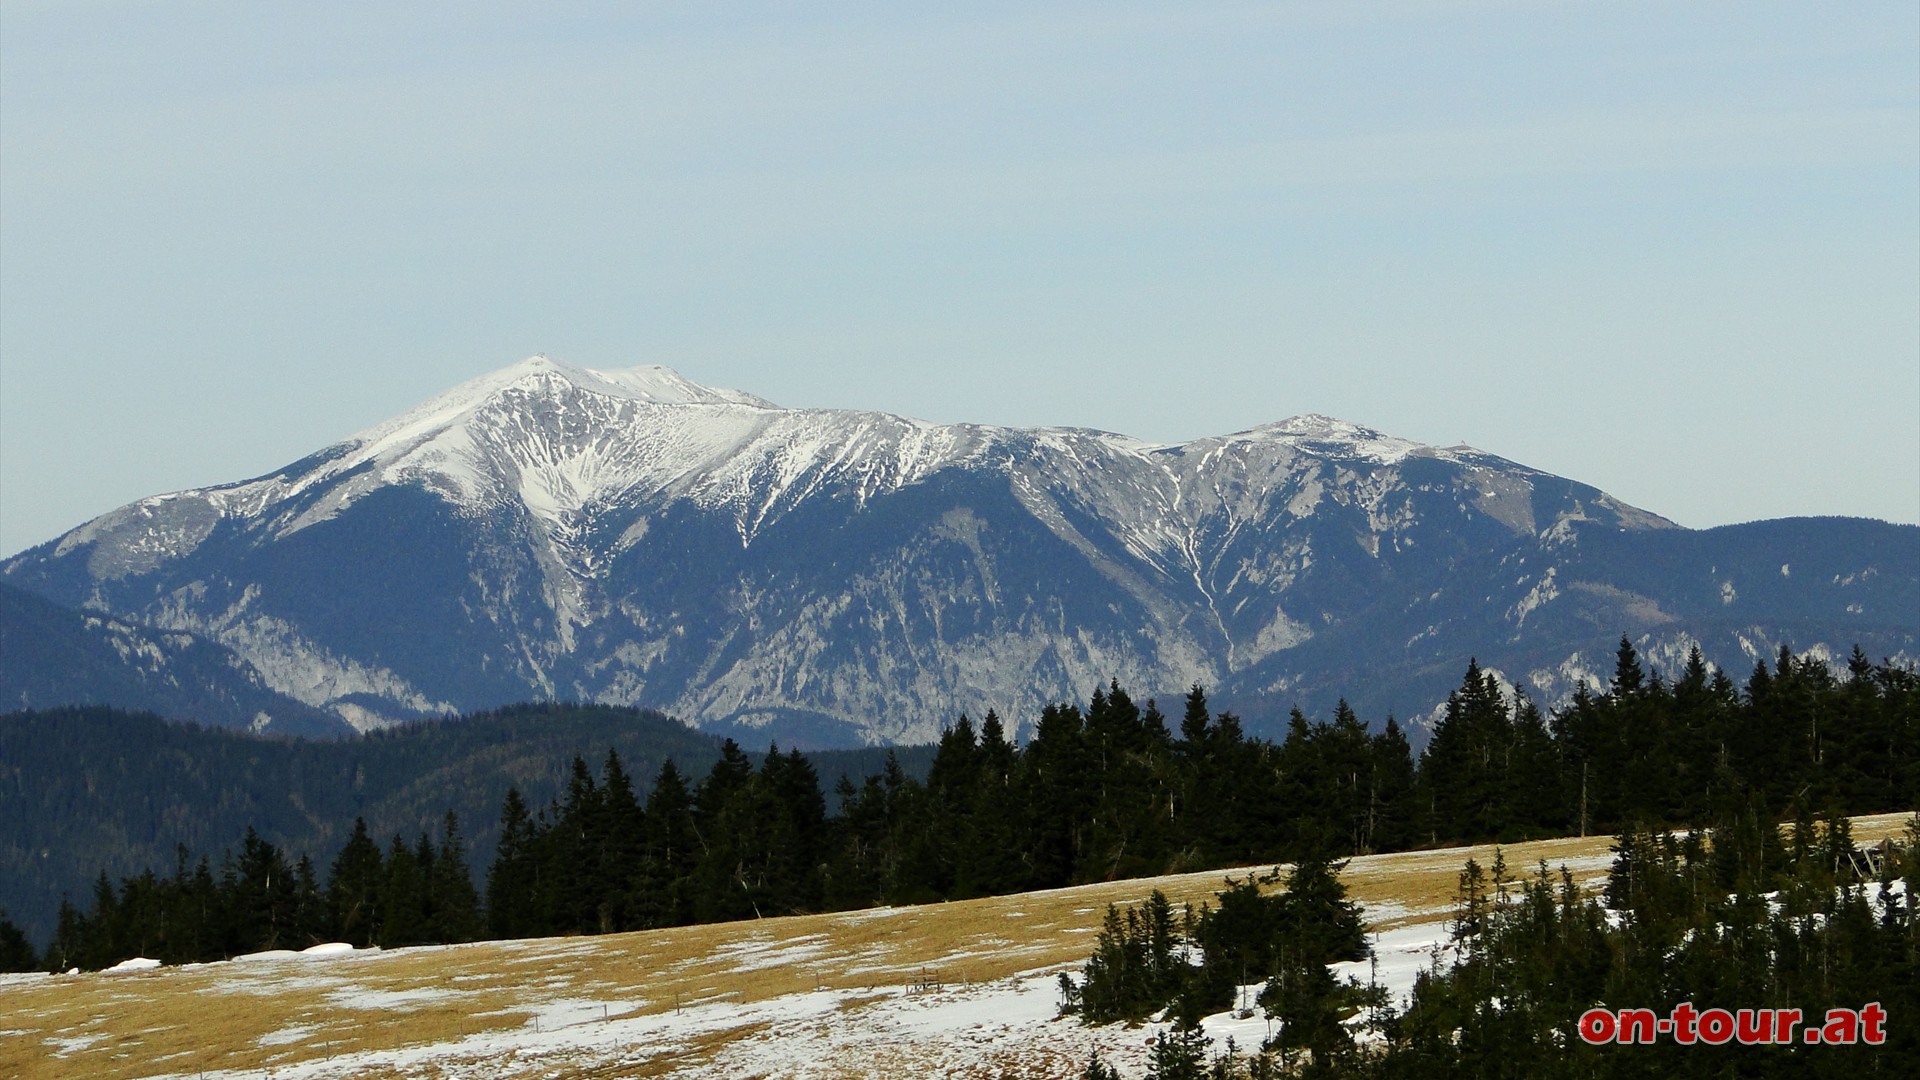 Schn zu sehen; der hchste Berg Niedersterreichs - der Schneeberg.